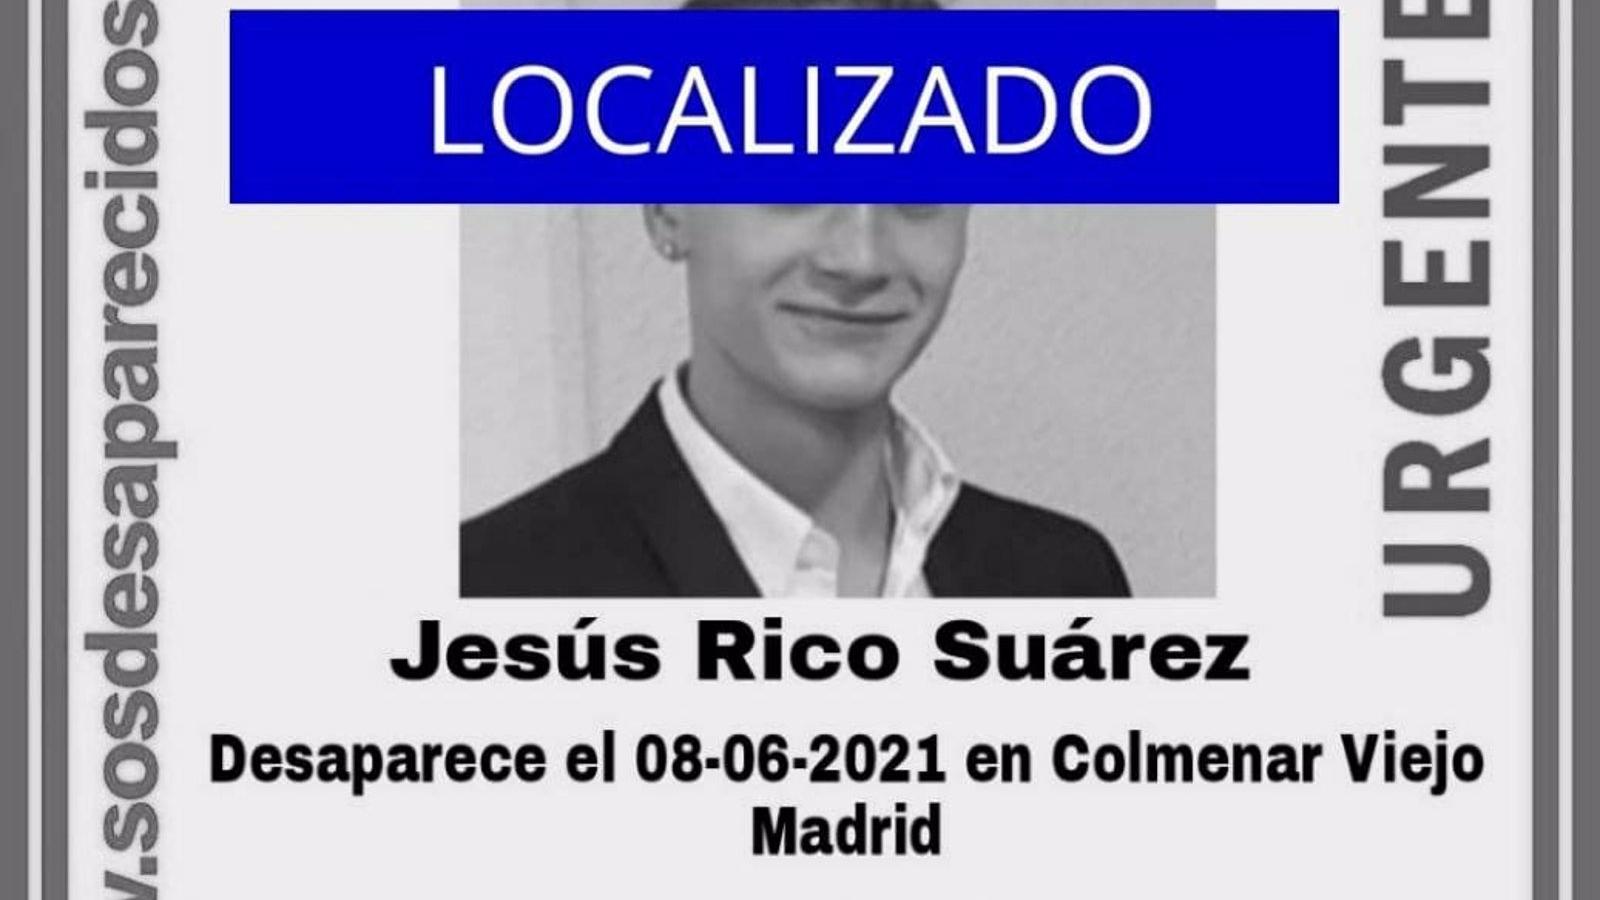 Aparece en buen estado el chico de 16 años desaparecido en Colmenar Viejo